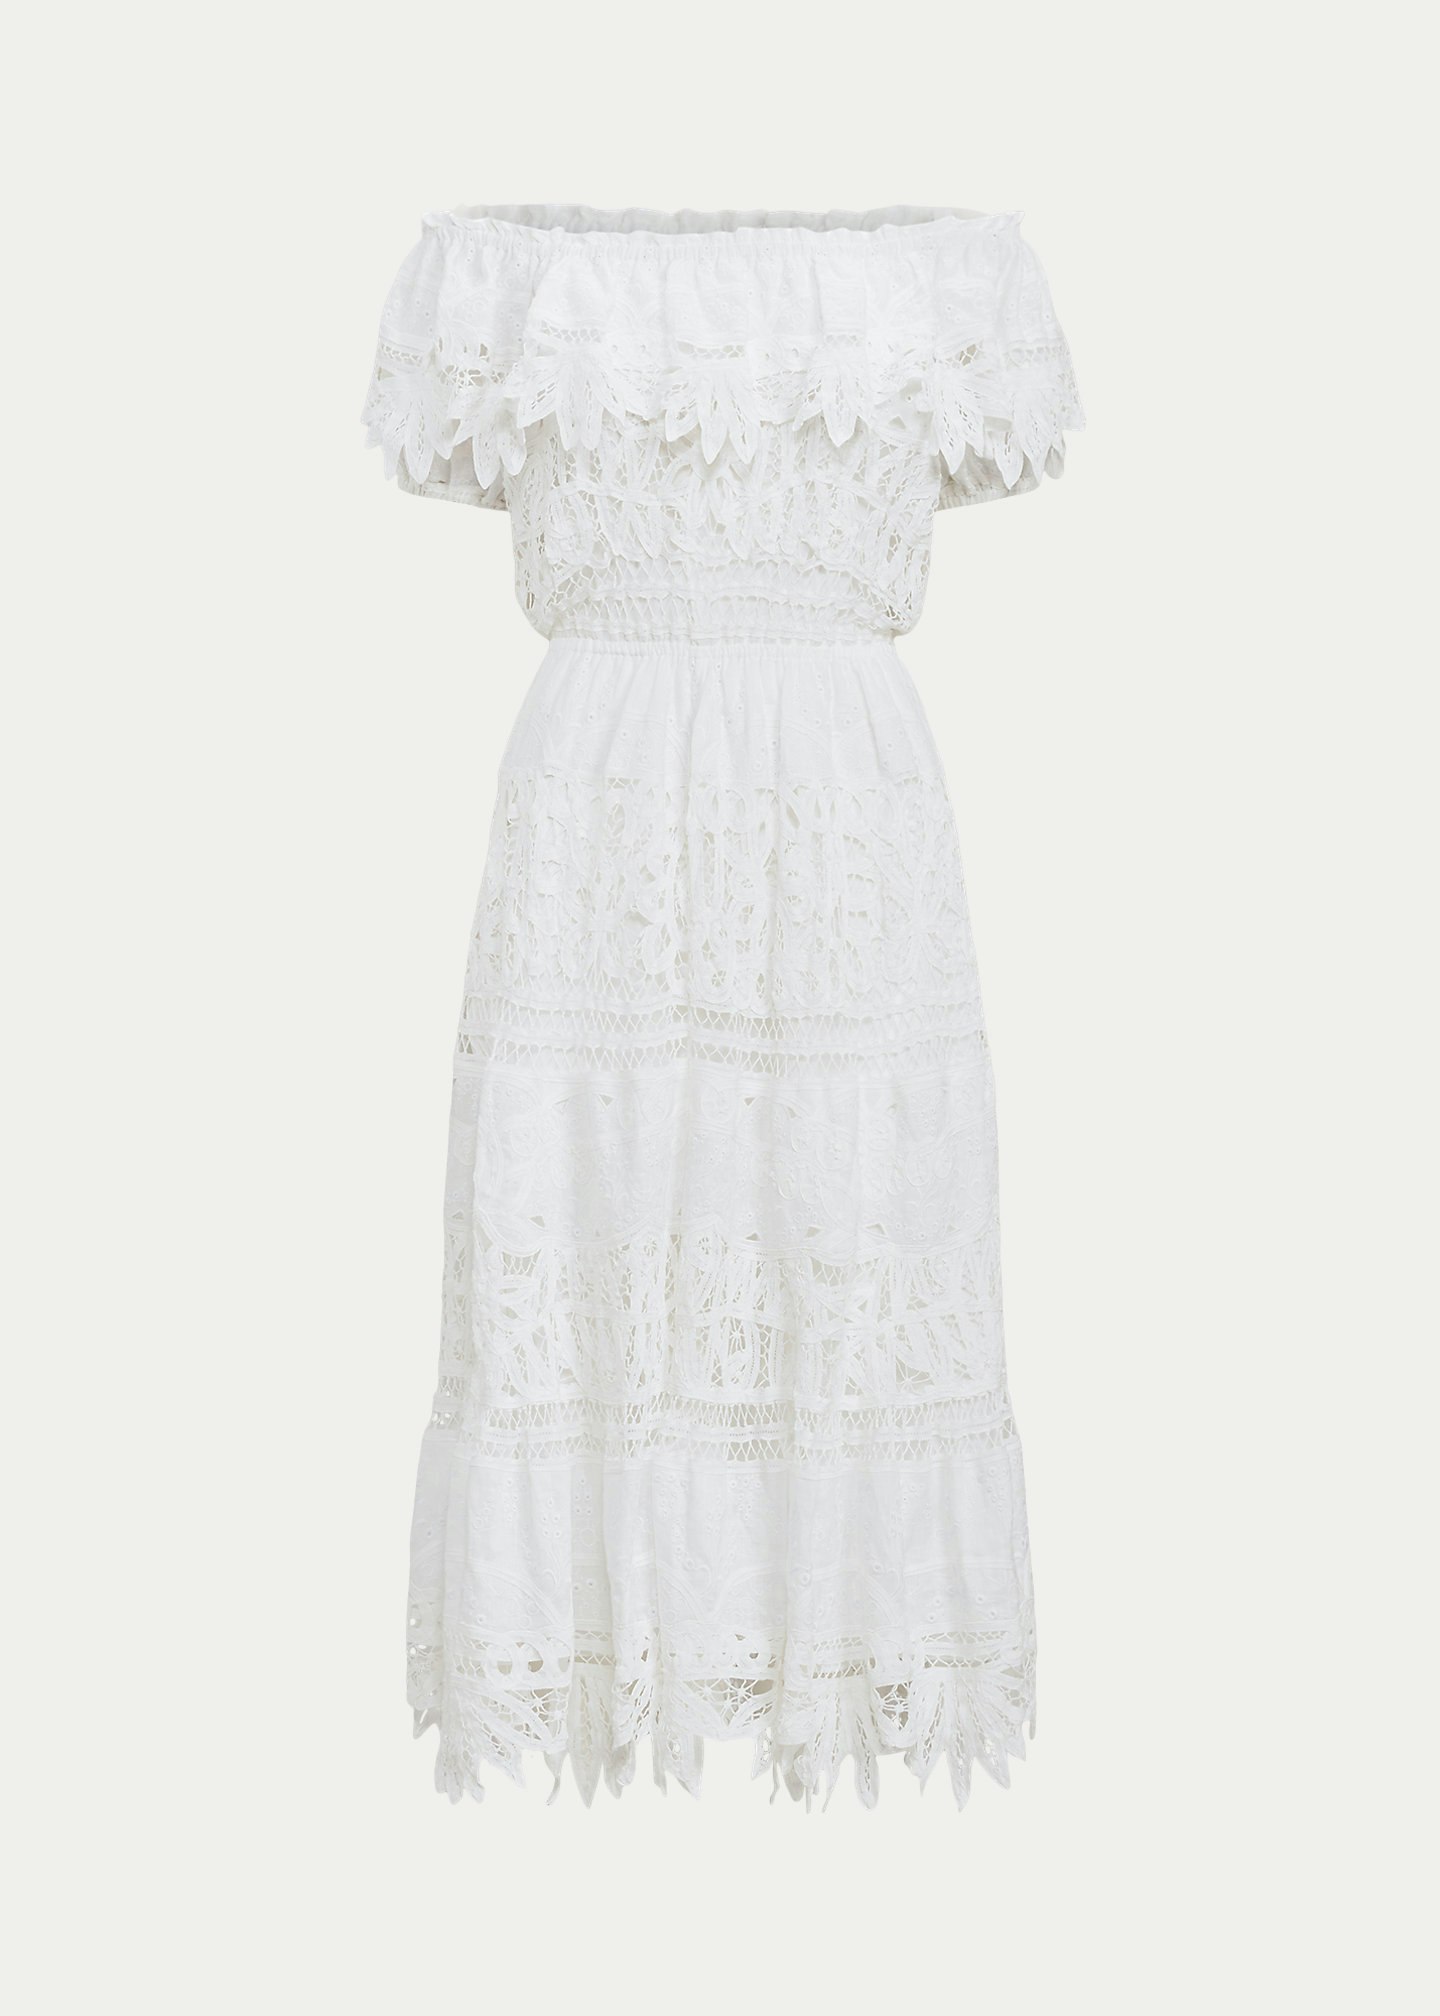 Polo Ralph Lauren, Battenberg-Lace Linen Dress, £749